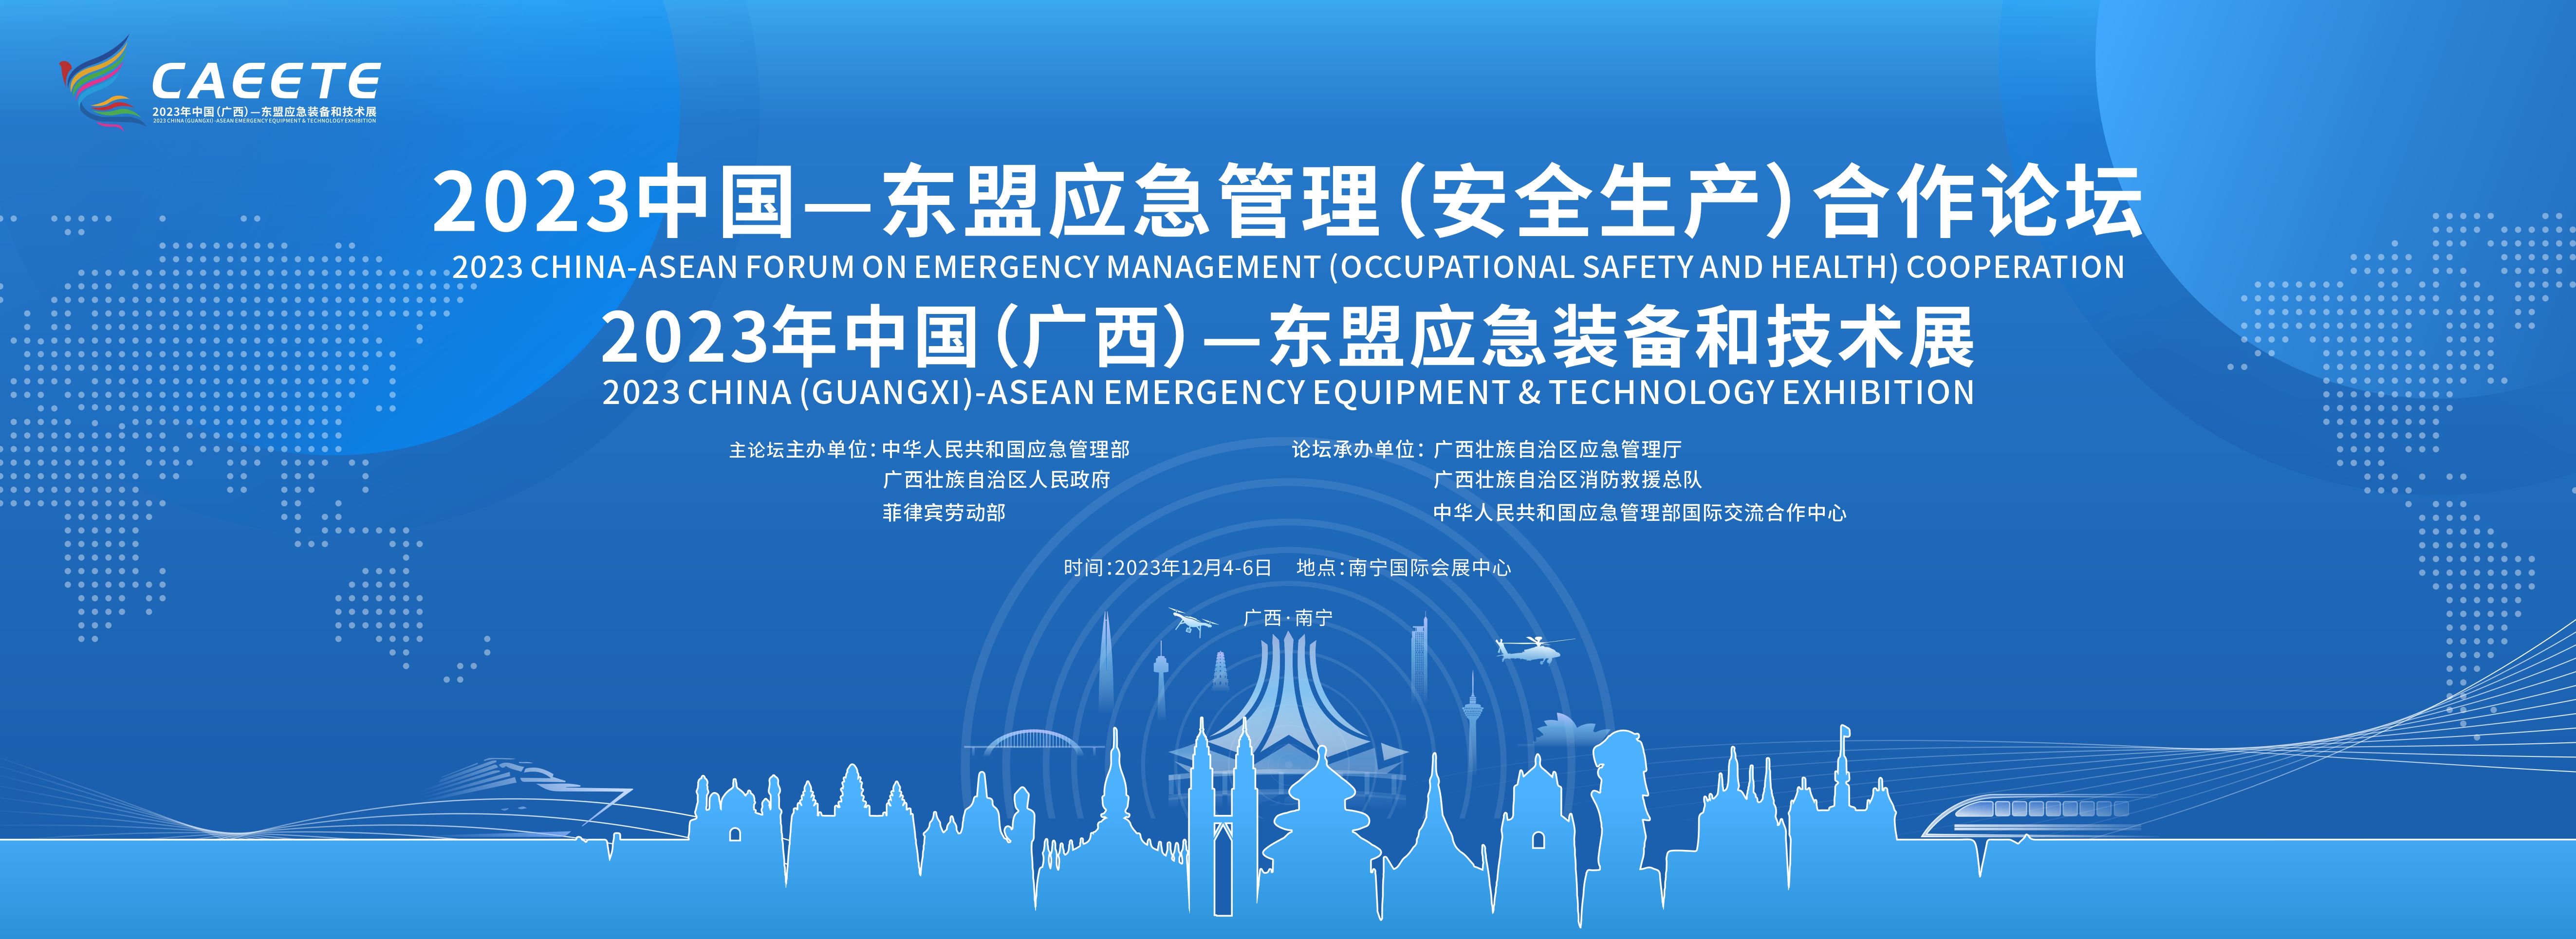 2023年中国（广西）—东盟应急装备和技术展